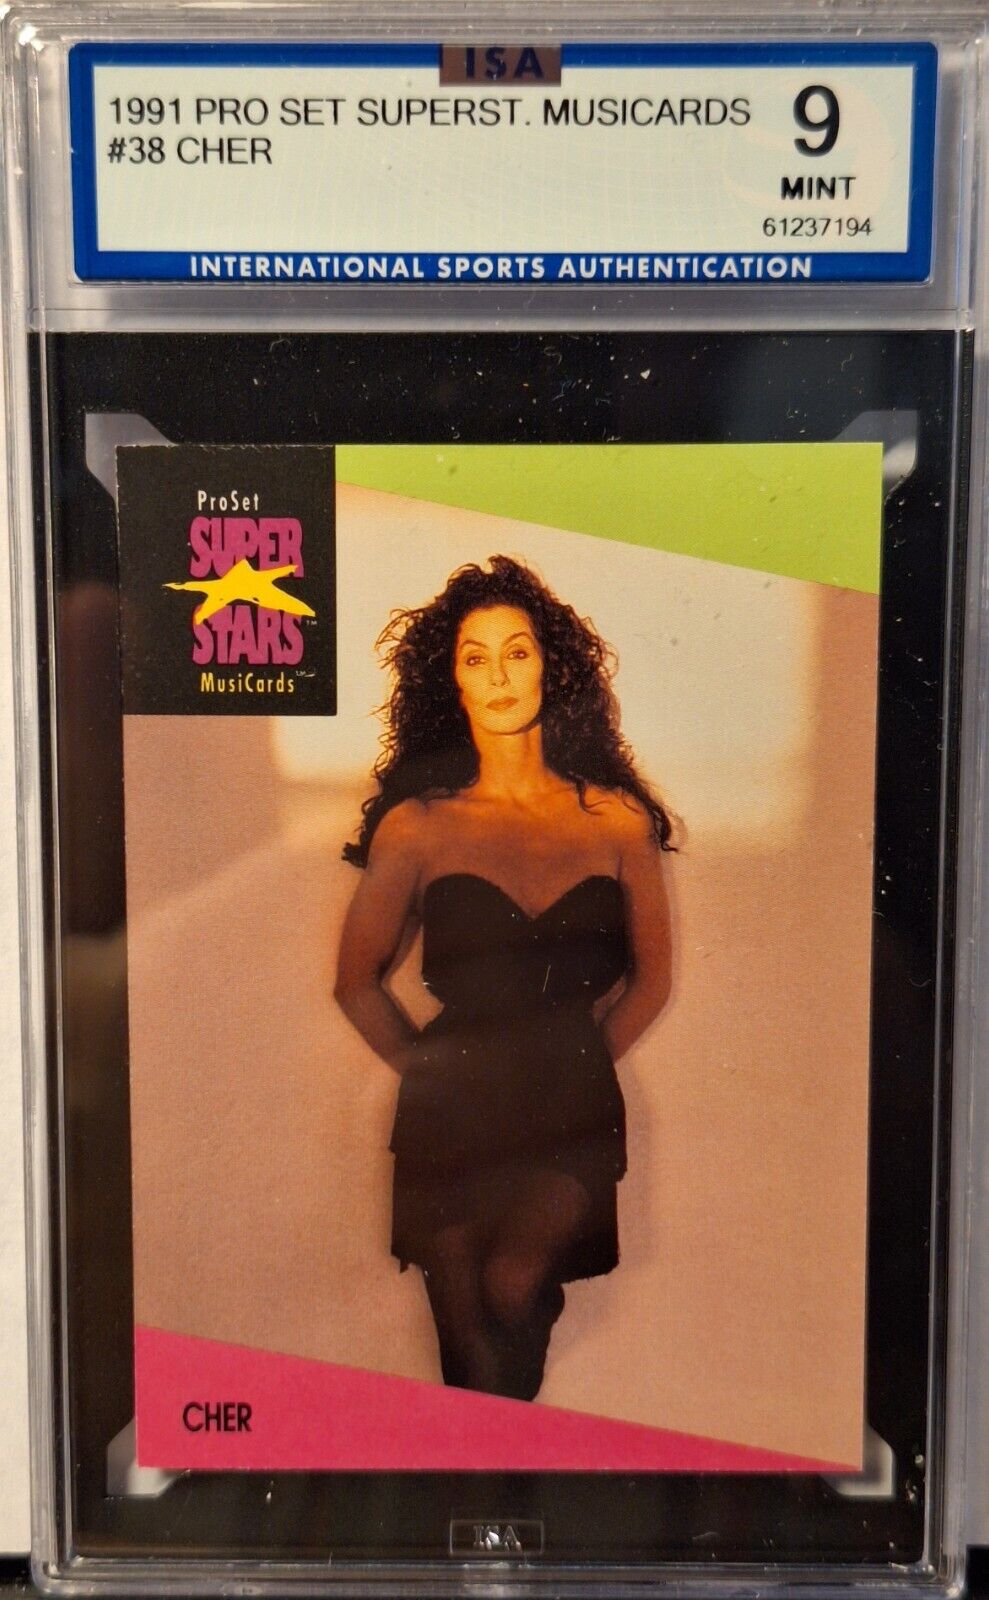 1991 Proset Superstars #38 Cher Musicards ISA 9 NEW Case